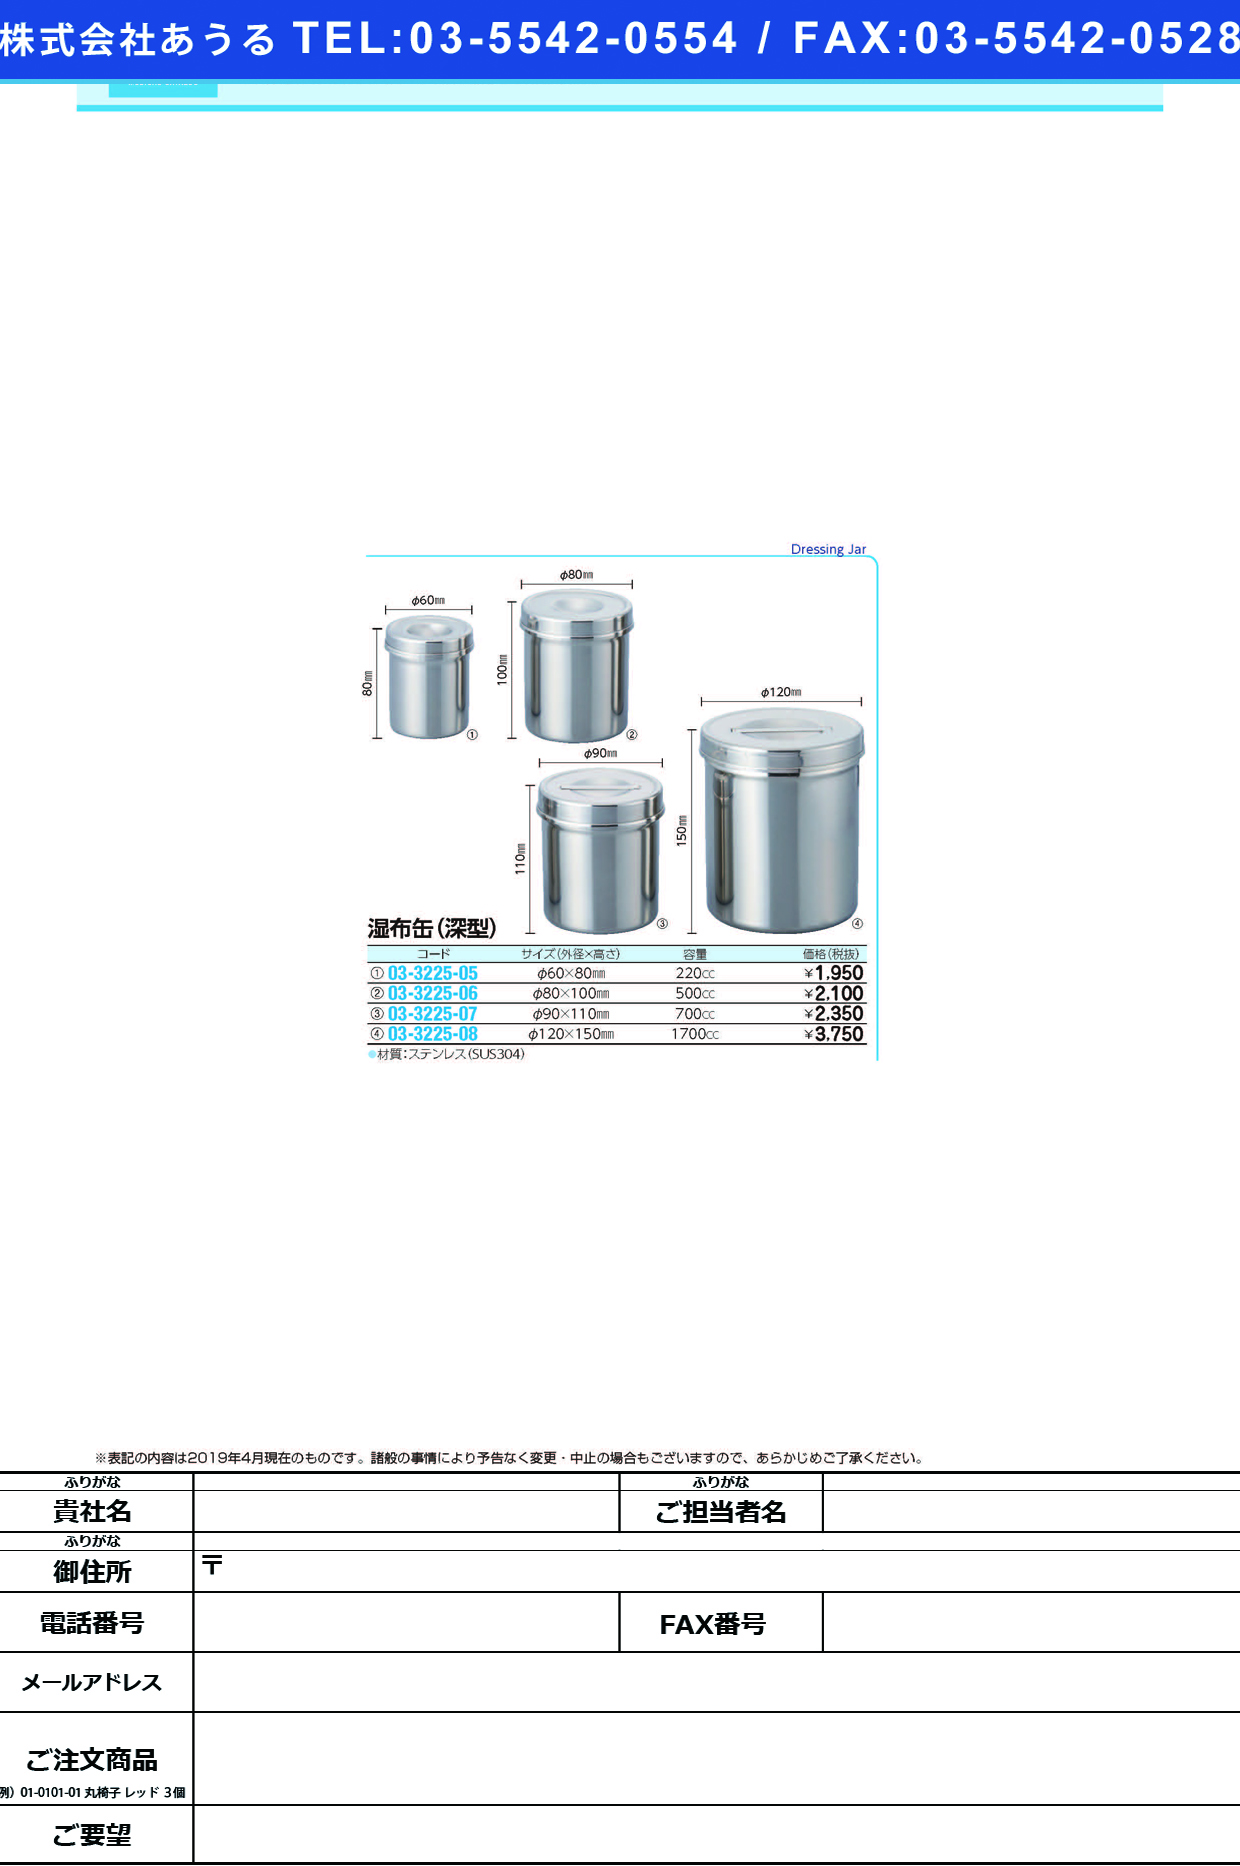 (03-3225-05)湿布缶（深型） 60X80MM(220CC) ｼｯﾌﾟｶﾝ【1個単位】【2019年カタログ商品】